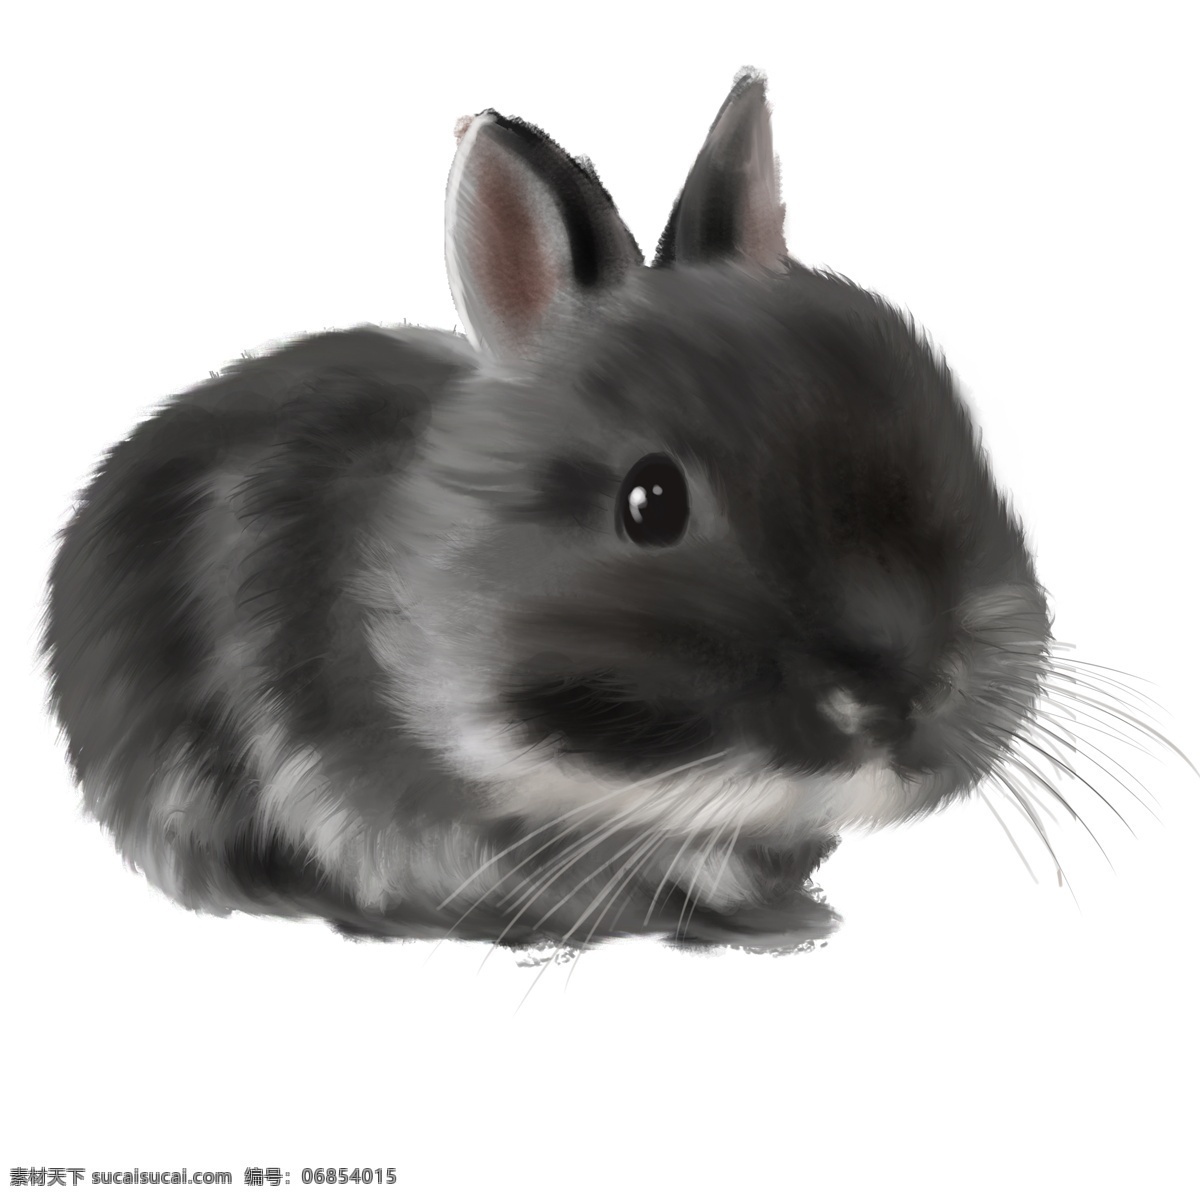 可爱 小 黑 兔 小兔子 小黑兔 可爱的小兔 兔兔 写实兔子 手绘插画 手绘兔子 呆萌的小兔 萌兔 乖乖兔